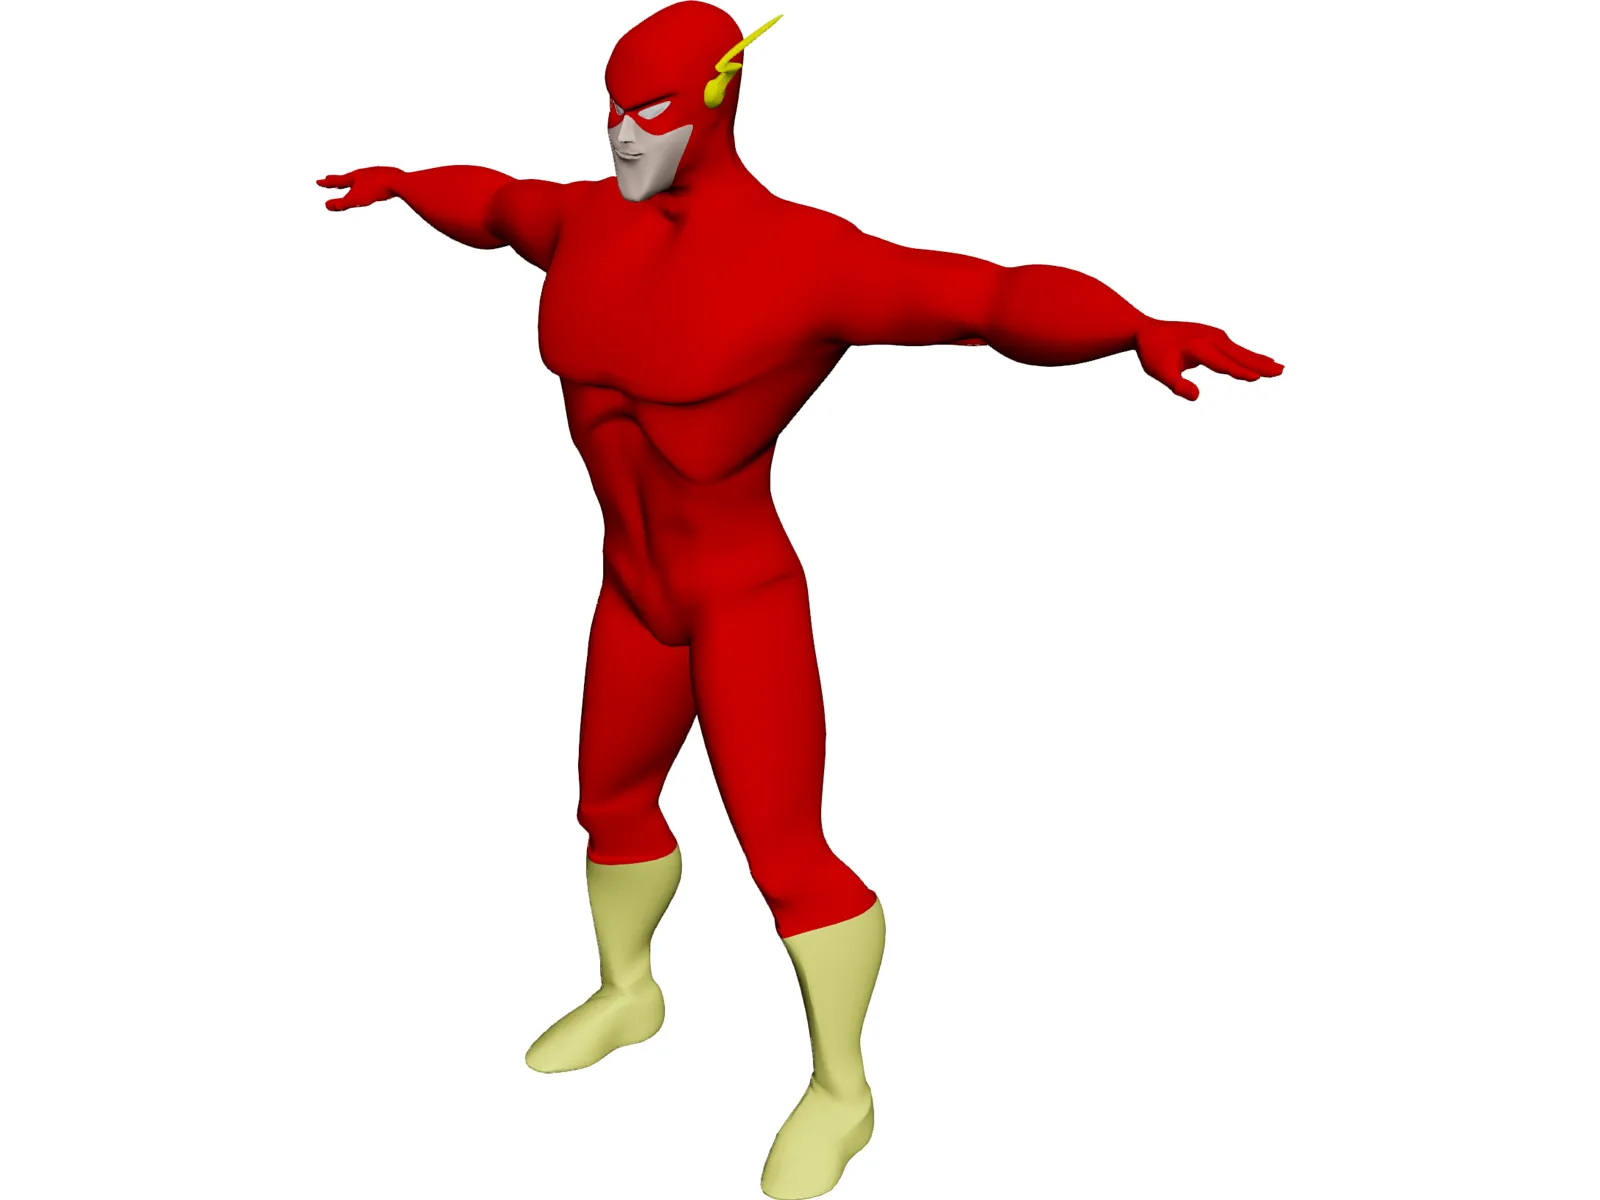 Flash [Justice League] 3D Model